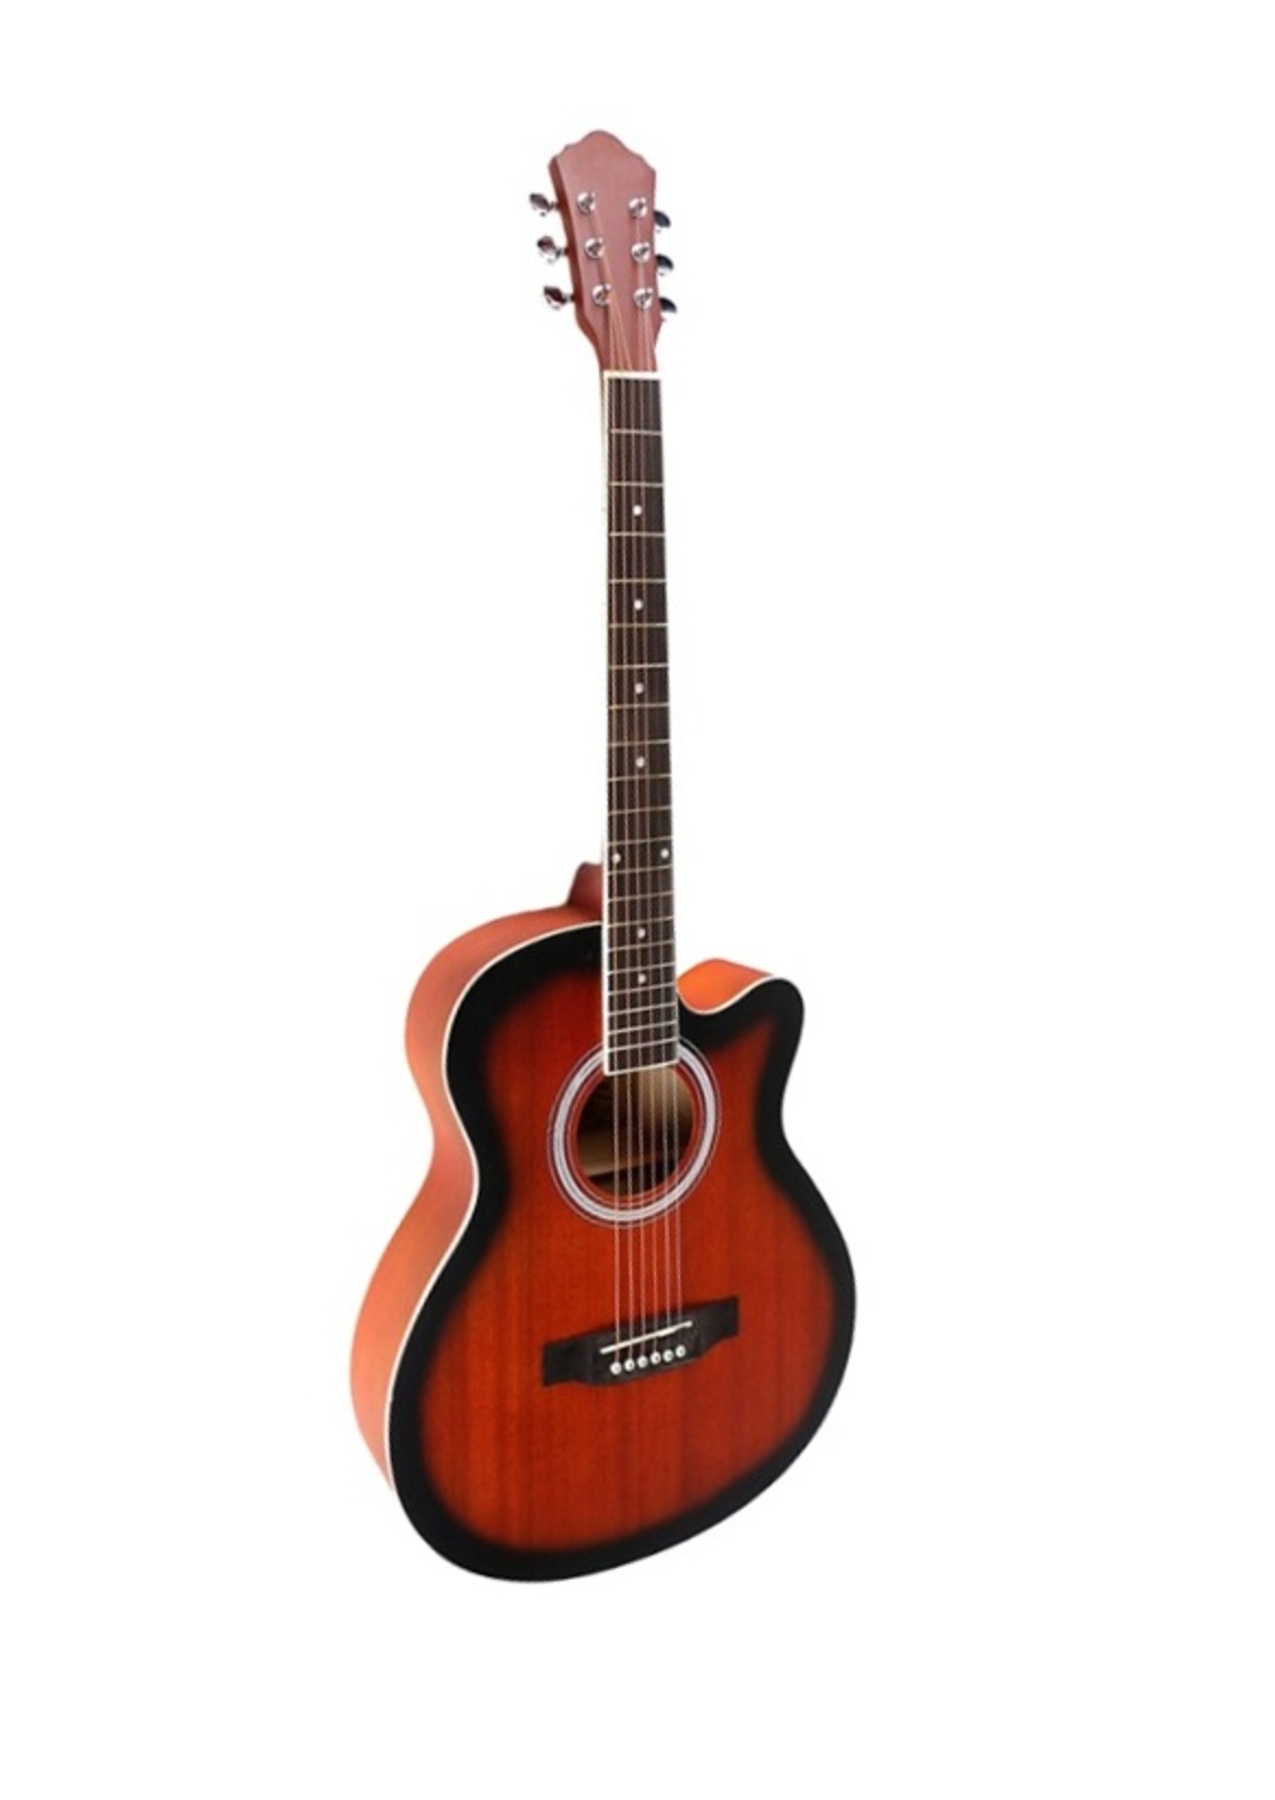 Акустические гитары Caravan K-4040 MAS гитара акустическая дерево 97см с вырезом